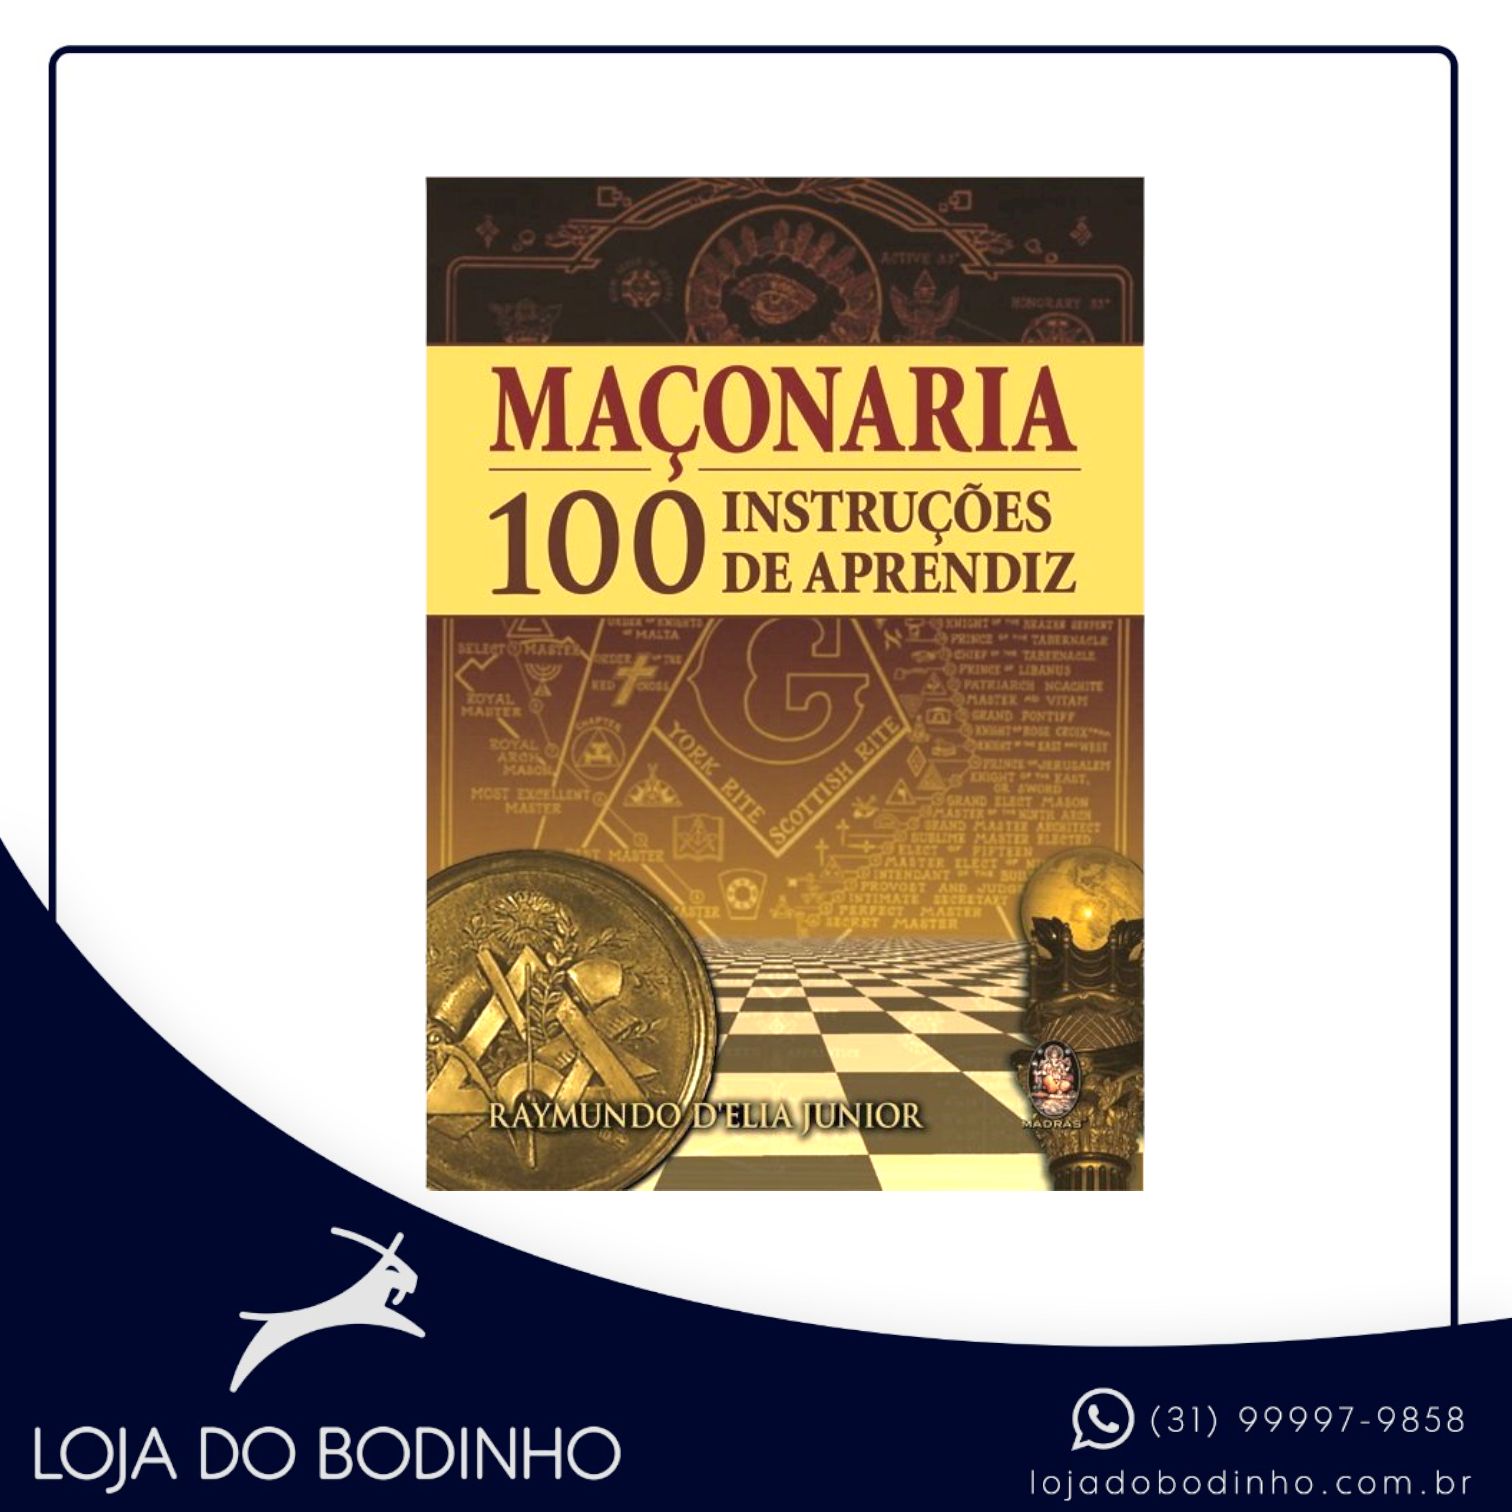 MAÇONARIA - 100 INSTRUÇÕES DE APRENDIZ